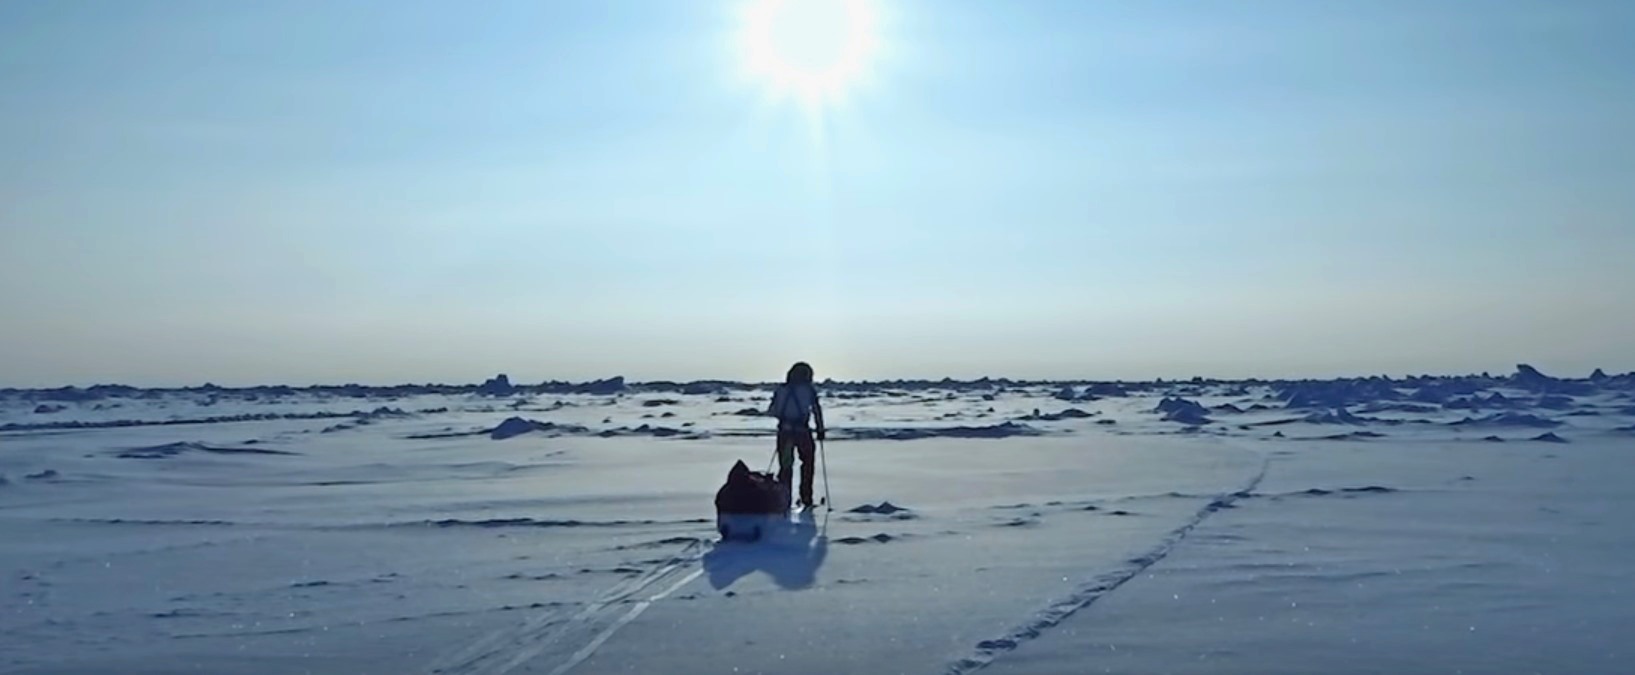 Американец идет пешком через льды Антарктиды: хроника его пути - Фото